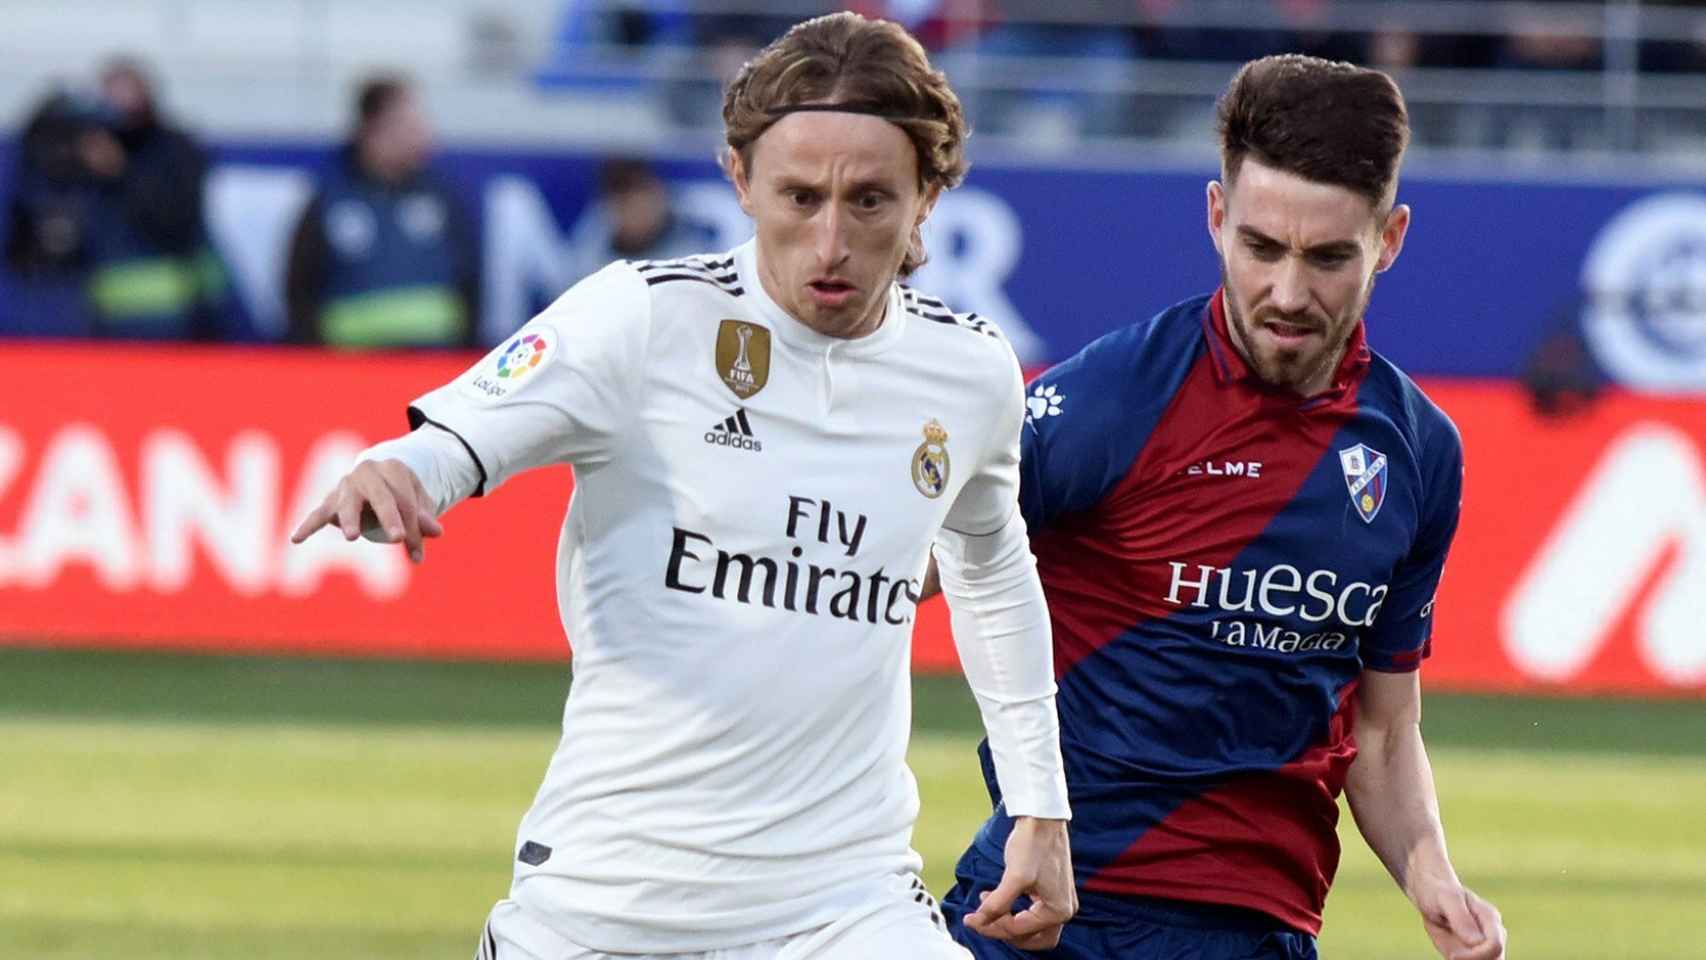 Luka Modric, en un partido del Real Madrid